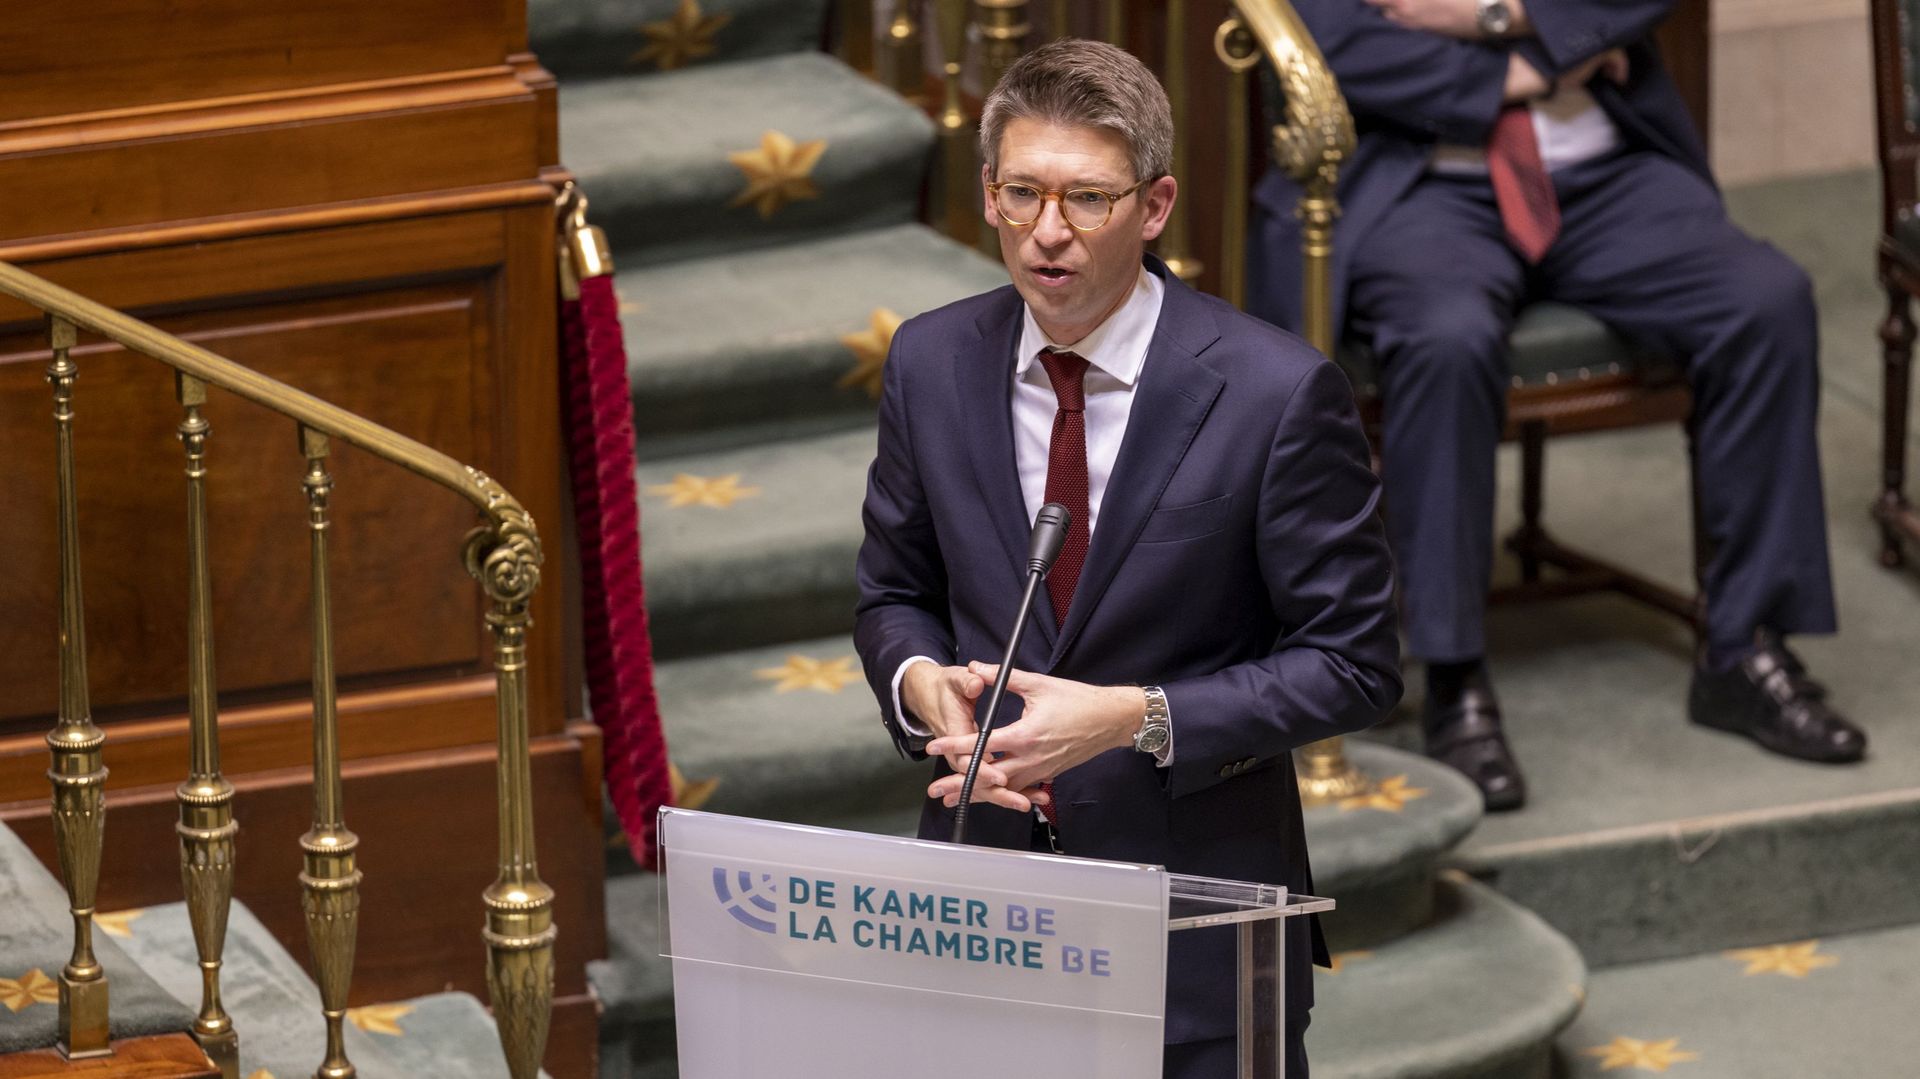 "Avec les socialistes au gouvernement, il n'y aura pas de saut d'index", a lancé le vice-Premier ministre Pierre-Yves Dermagne (PS)